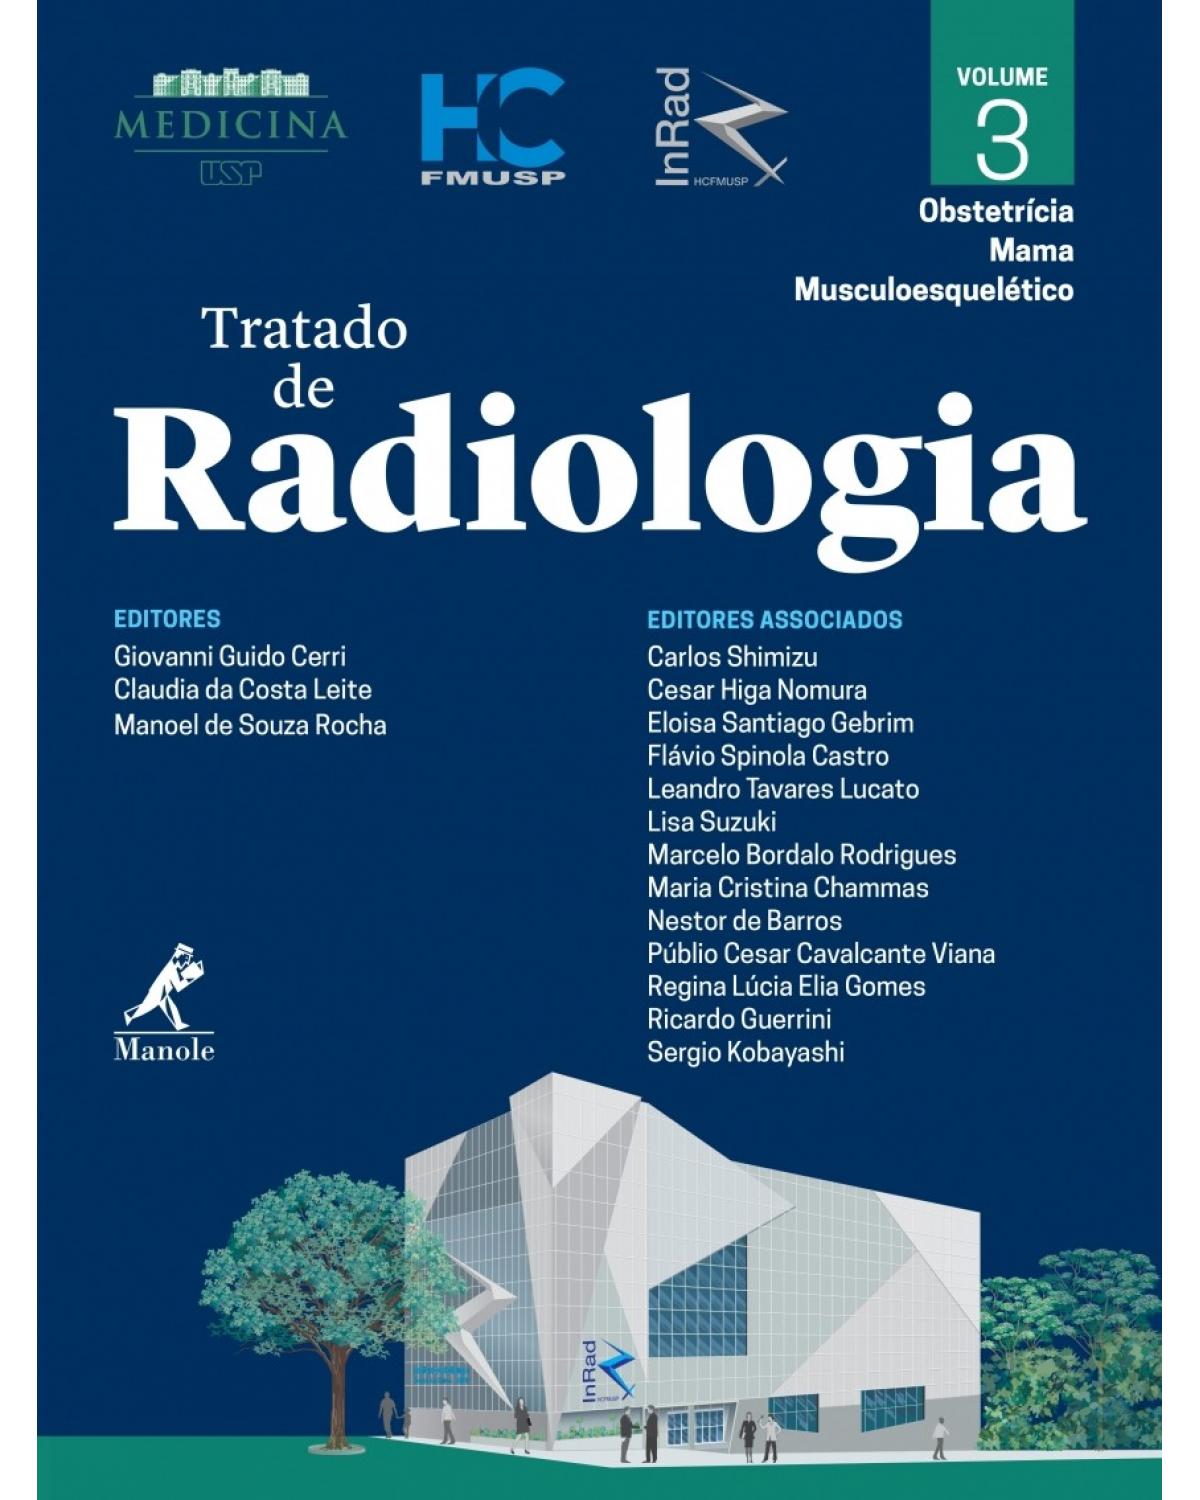 Tratado de radiologia - Volume 3: Obstetrícia, mama, musculoesquelético - 1ª Edição | 2017